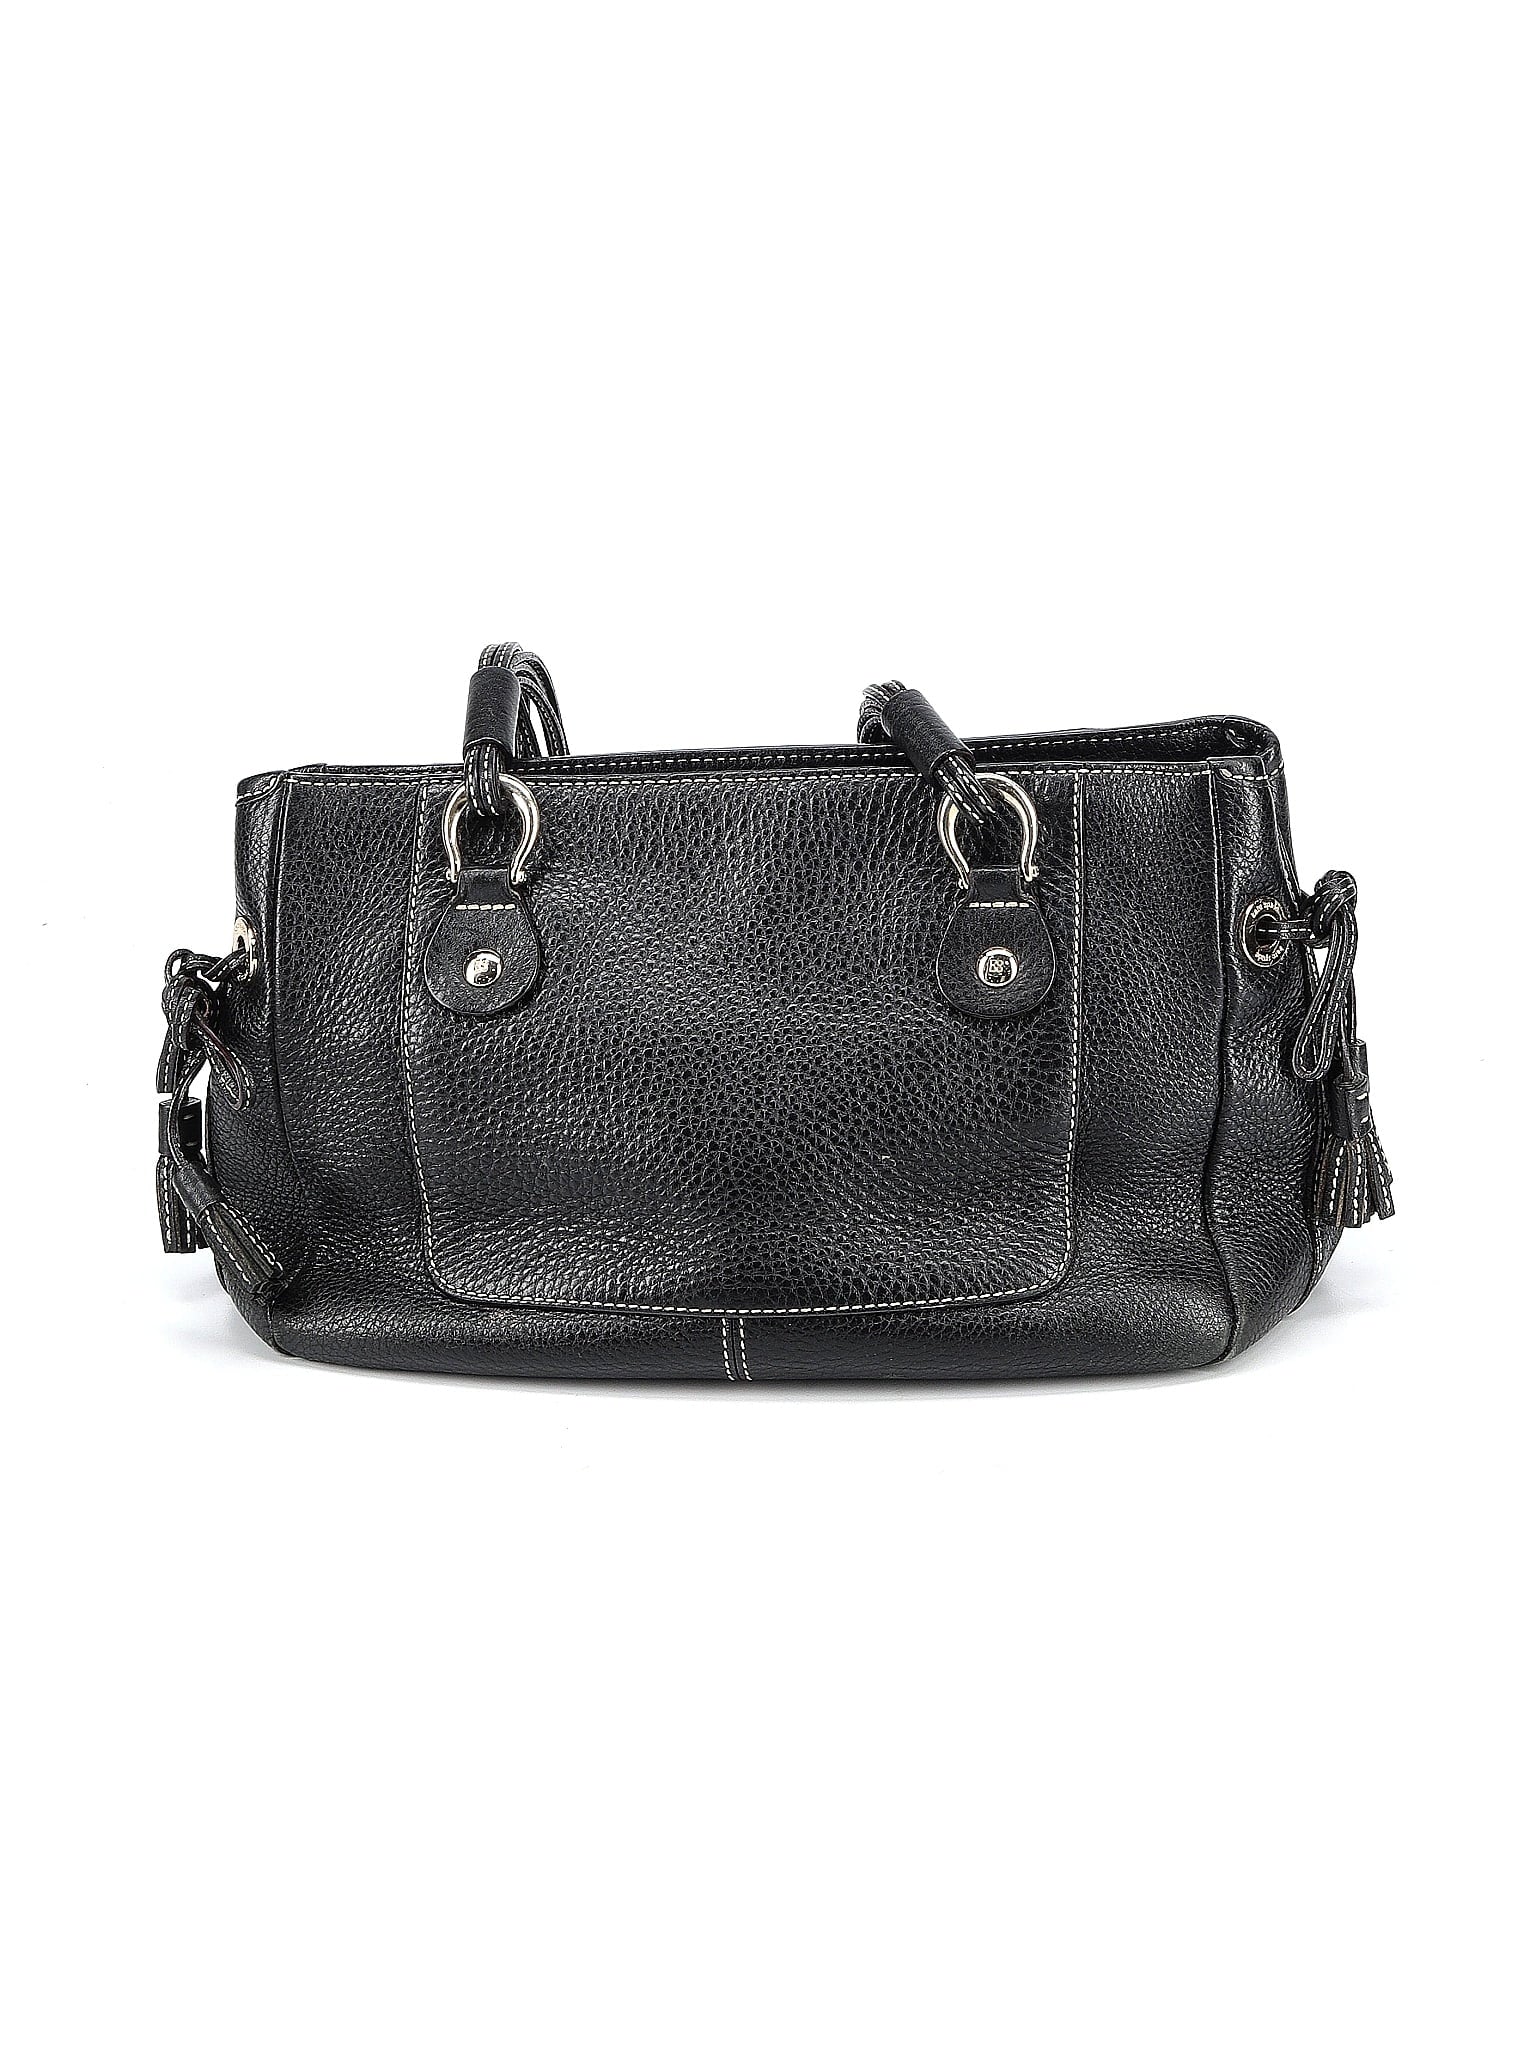 Leather Shoulder Bag size - One Size